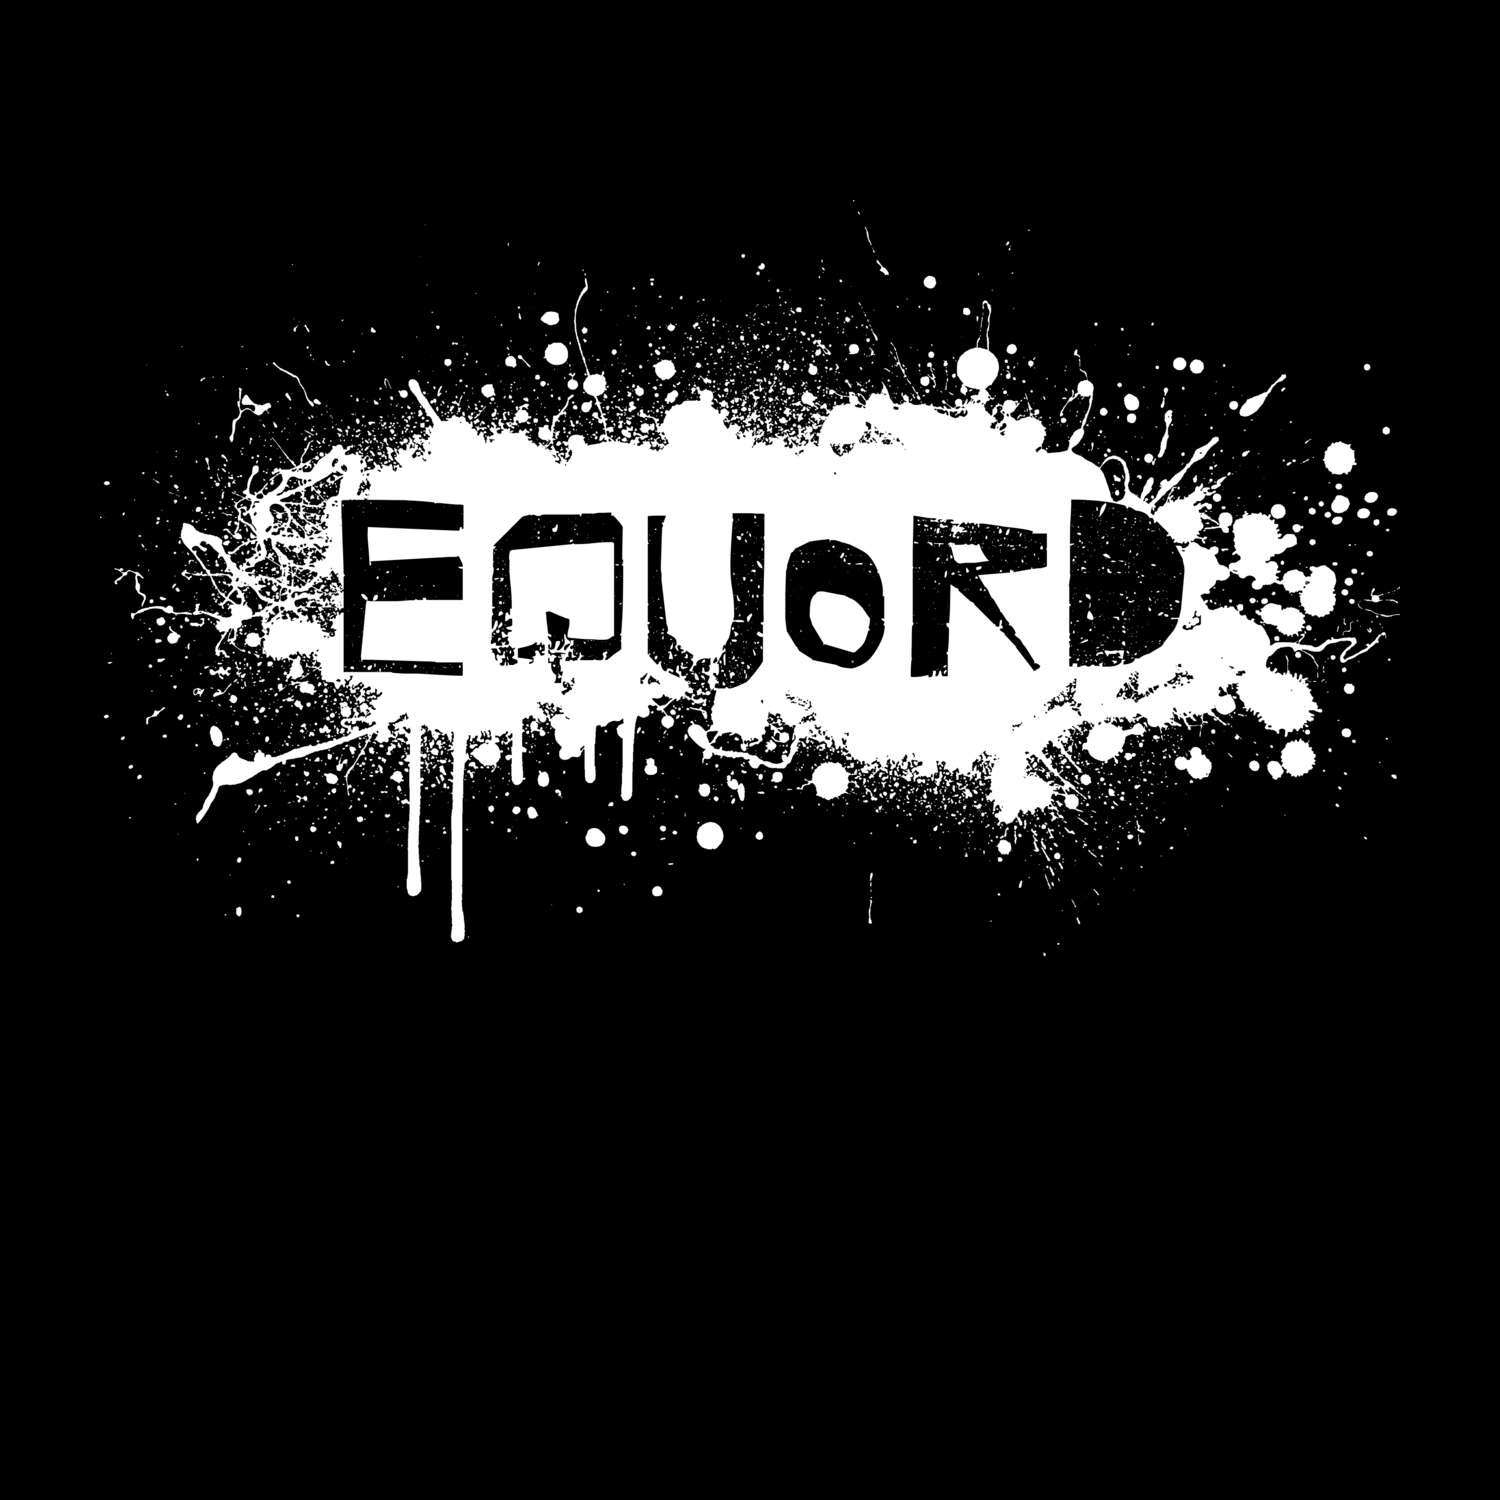 Equord T-Shirt »Paint Splash Punk«